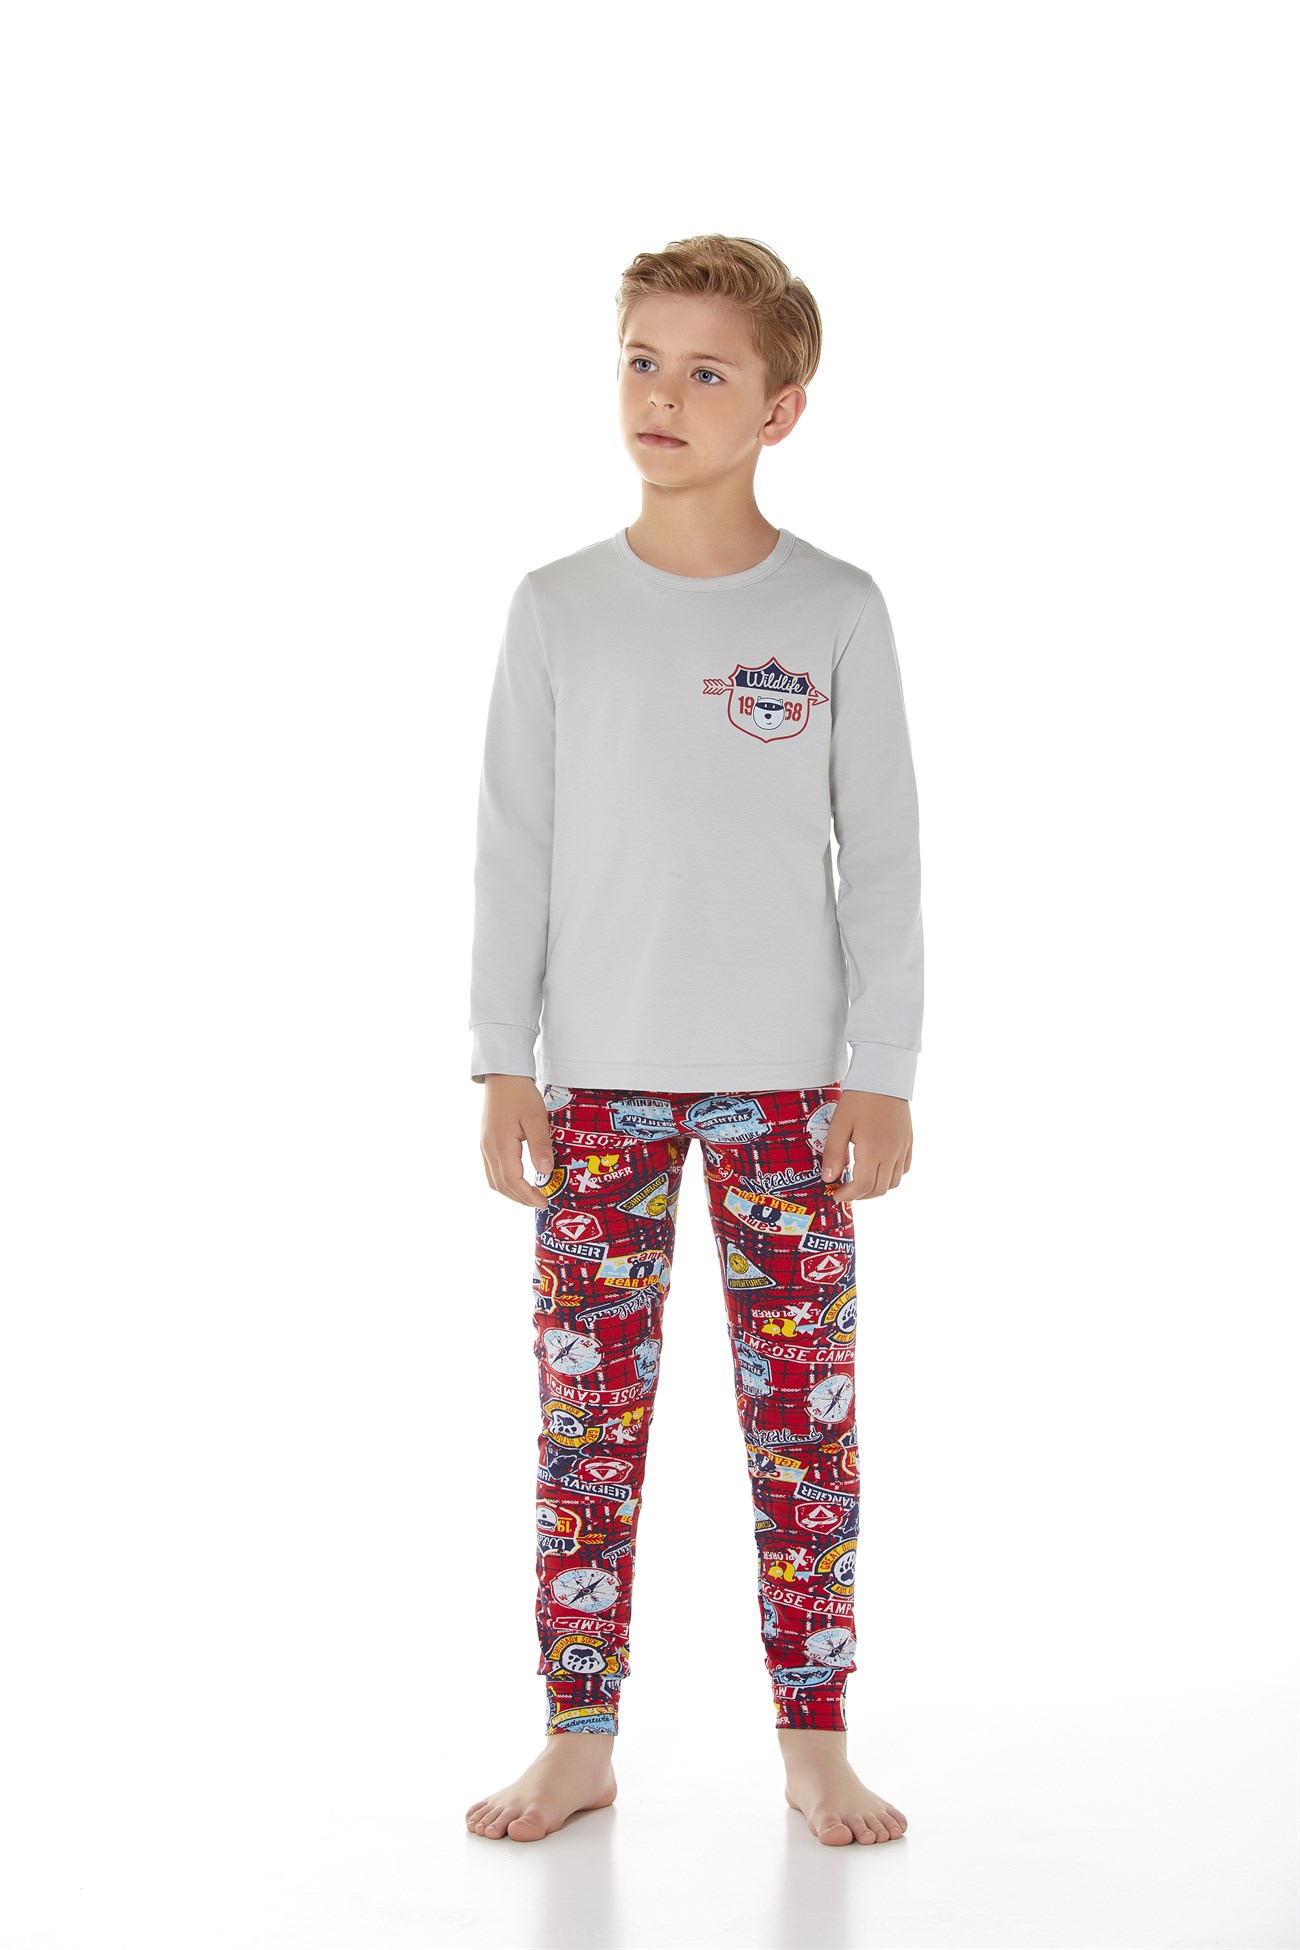 Baykar Erkek Çocuk Uzun Kollu Pijama Takımı 9643 Gri